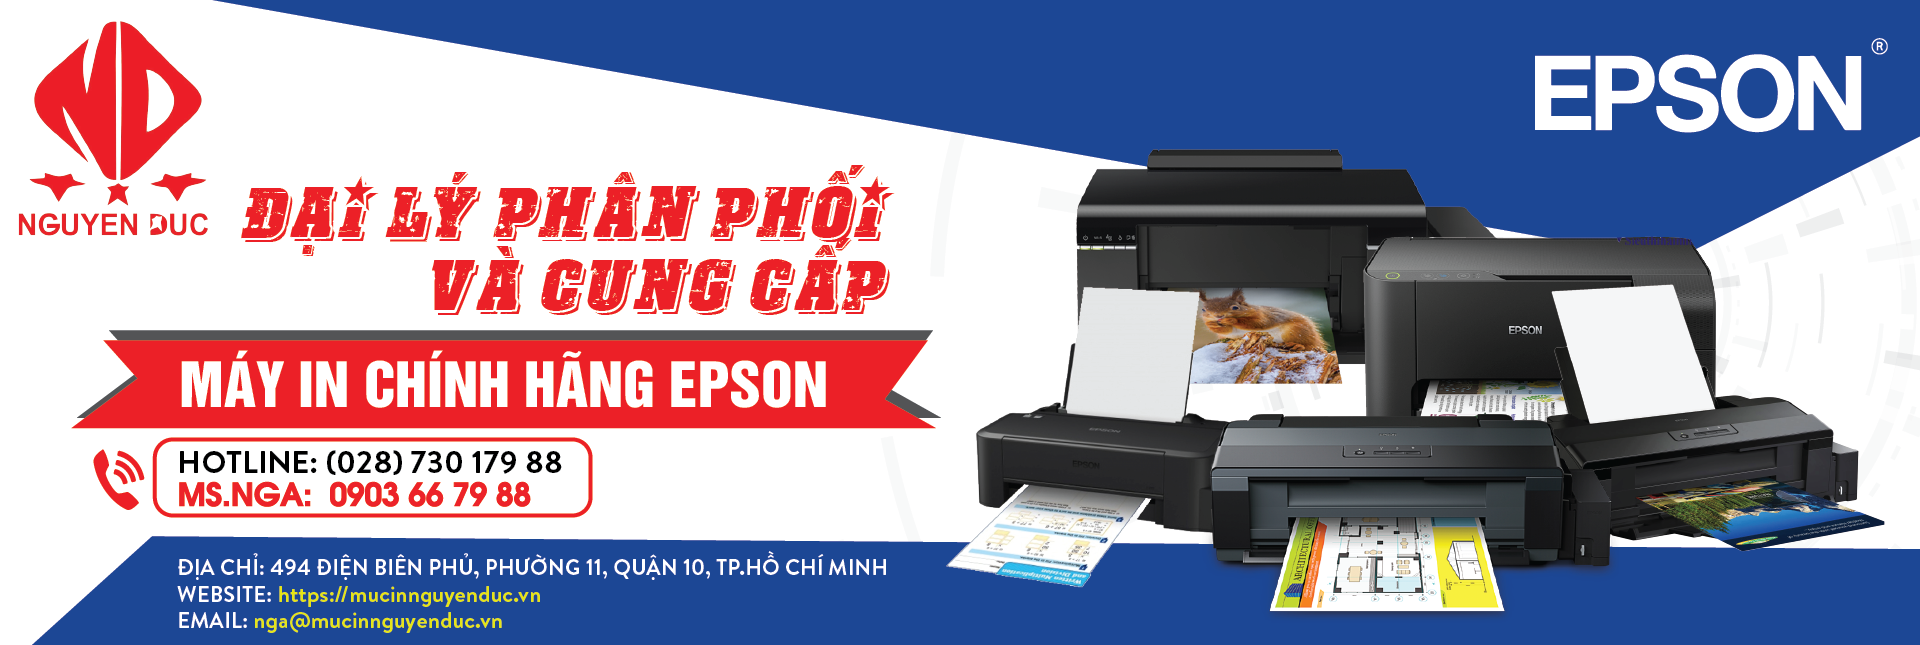 Đại lí phân phối máy in epson LQ-310 - chính hãng, giao hàng và lắp đặt tại quận 3, thành phố Hồ Chí Minh